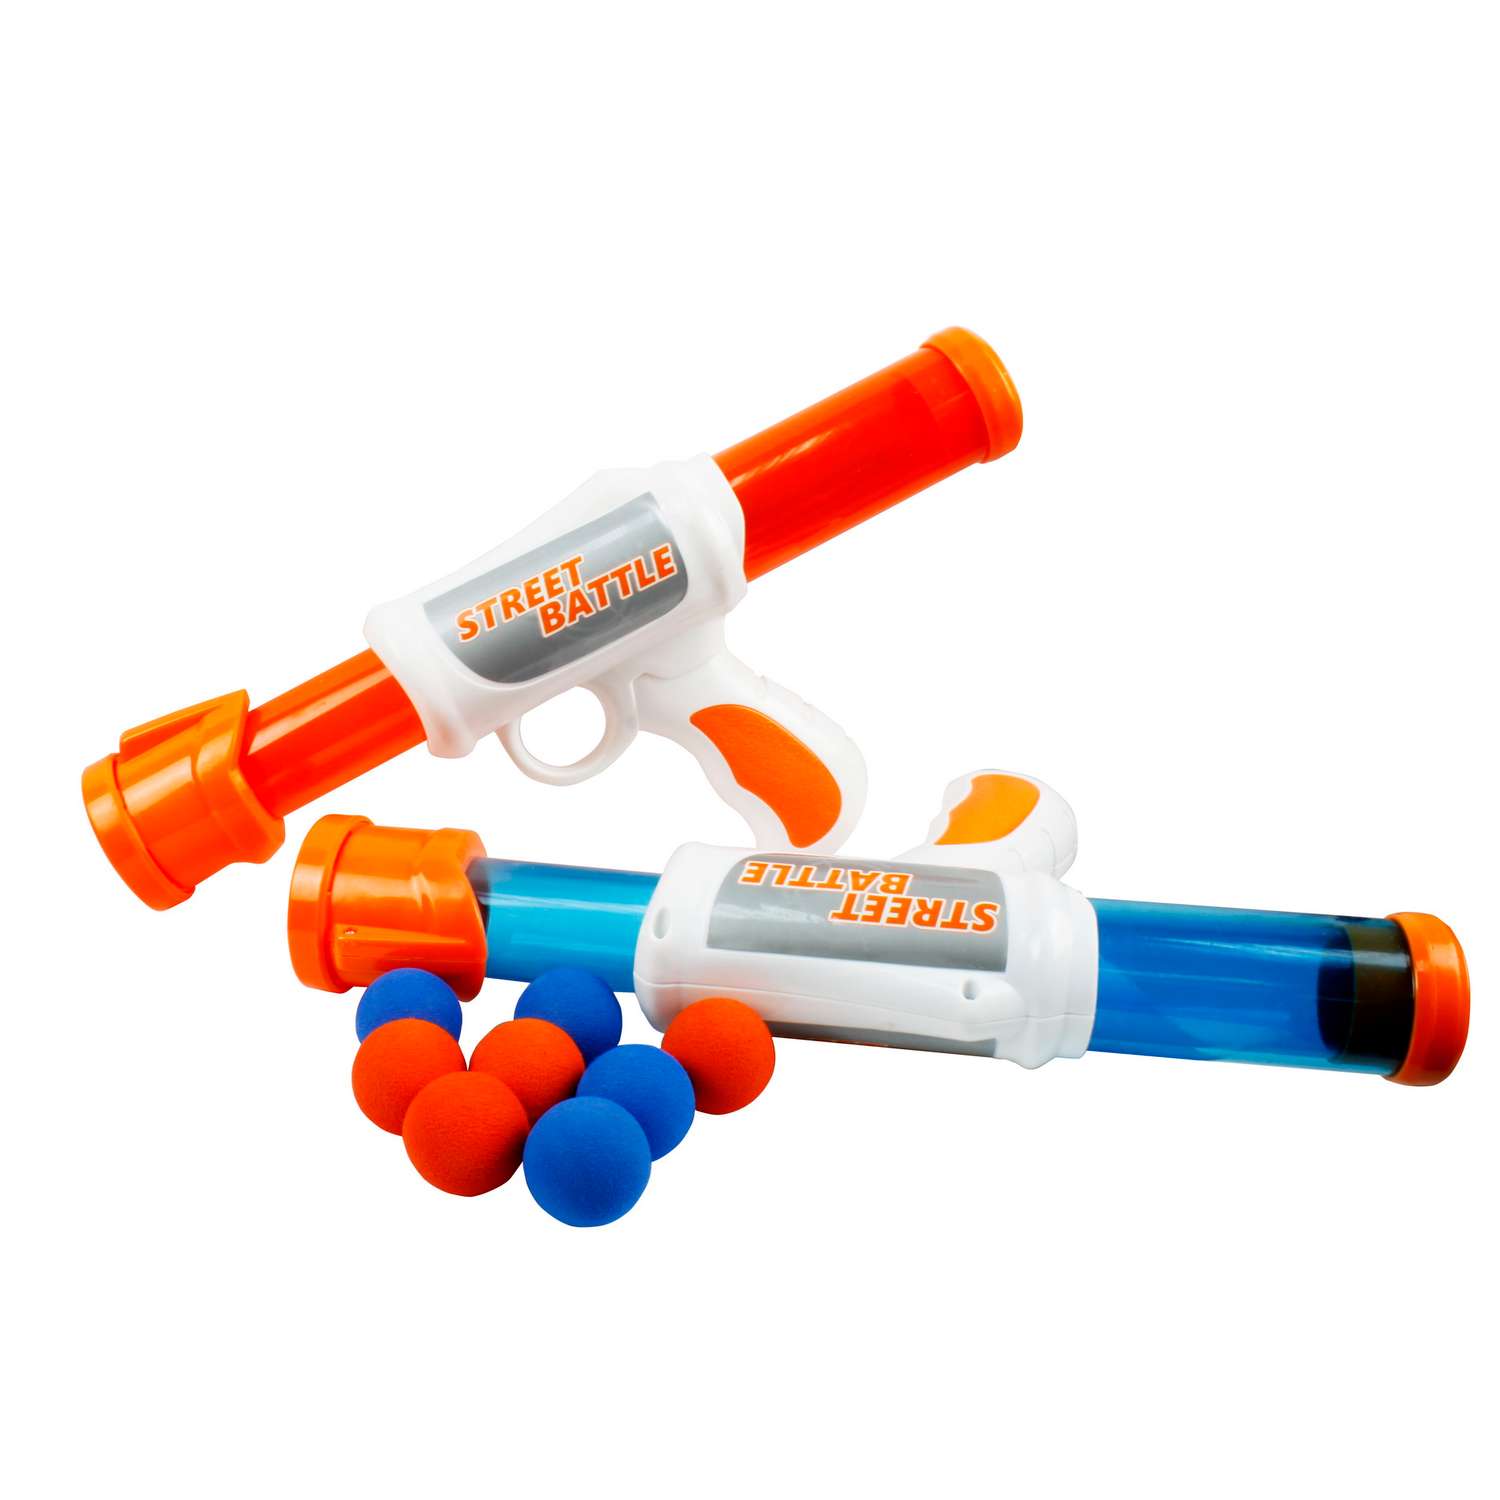 Игровой набор Street Battle оружие с мягкими шариками в комплекте 24 шара и 2 пистолета - фото 2